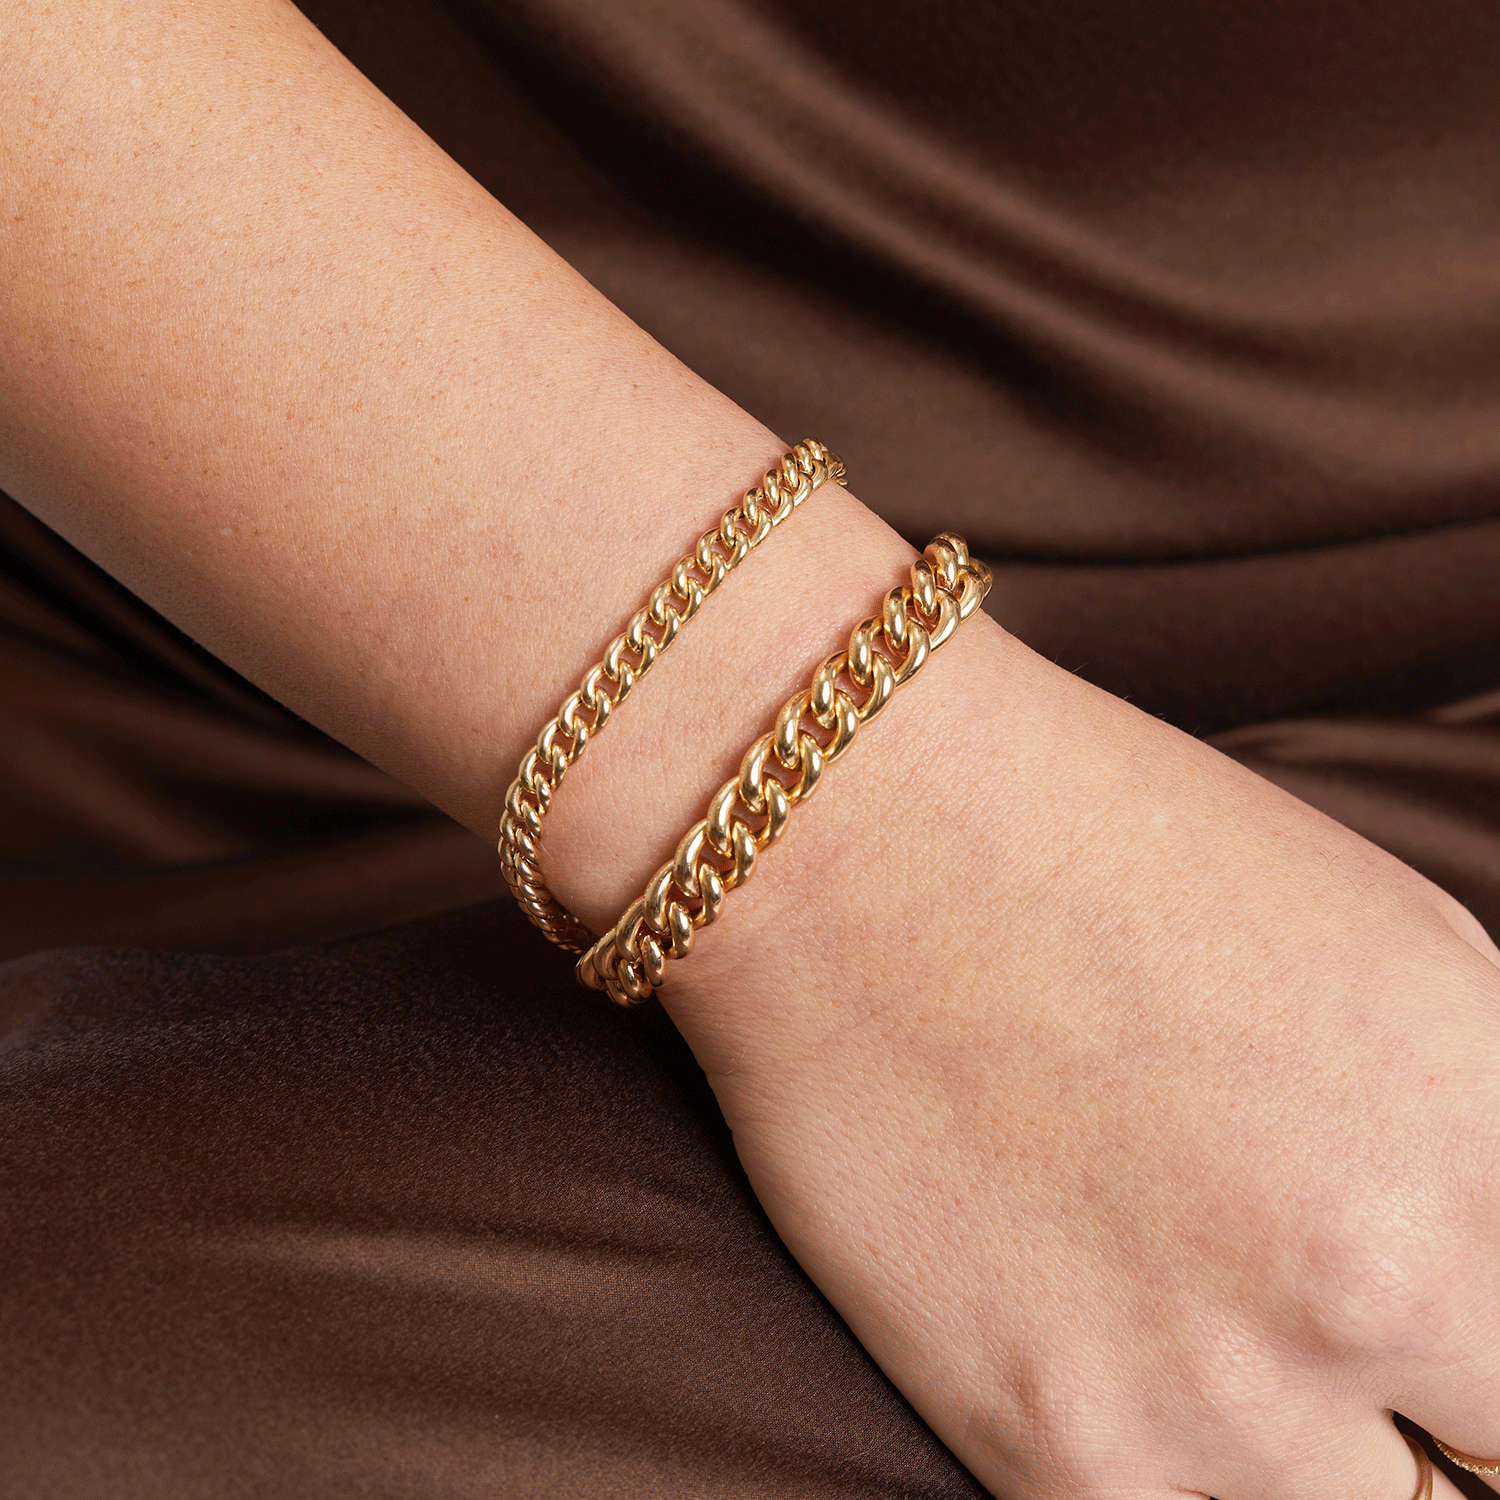 Macy's Cuban Chain Bracelet in 14k Gold - Macy's